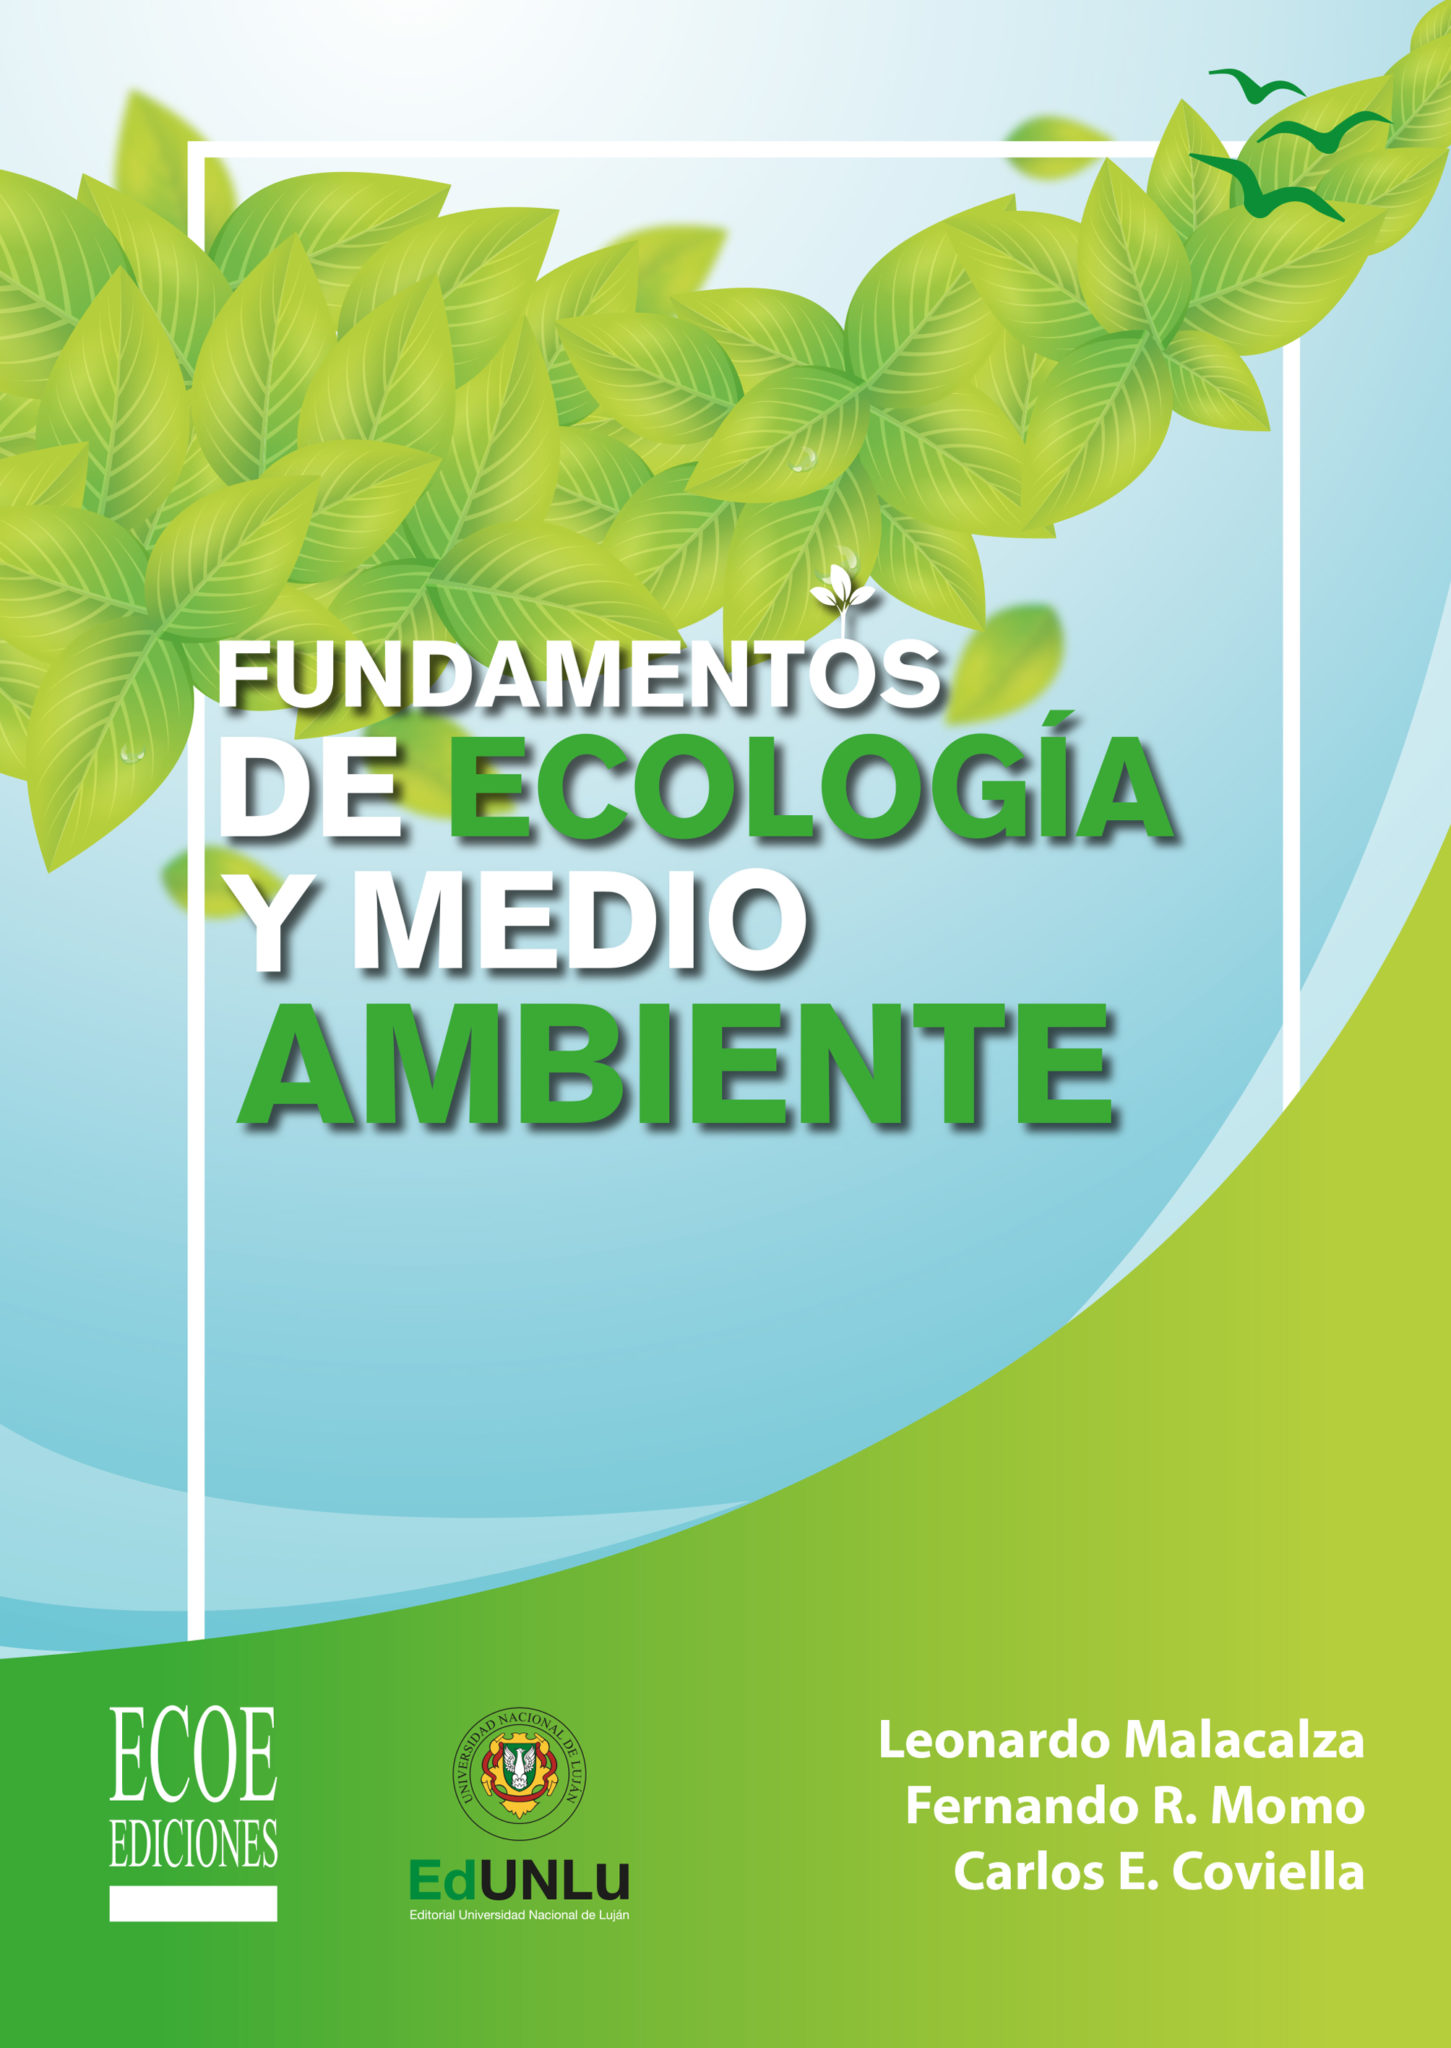 Fundamentos de ecología y medio ambiente – Ecoe Ediciones